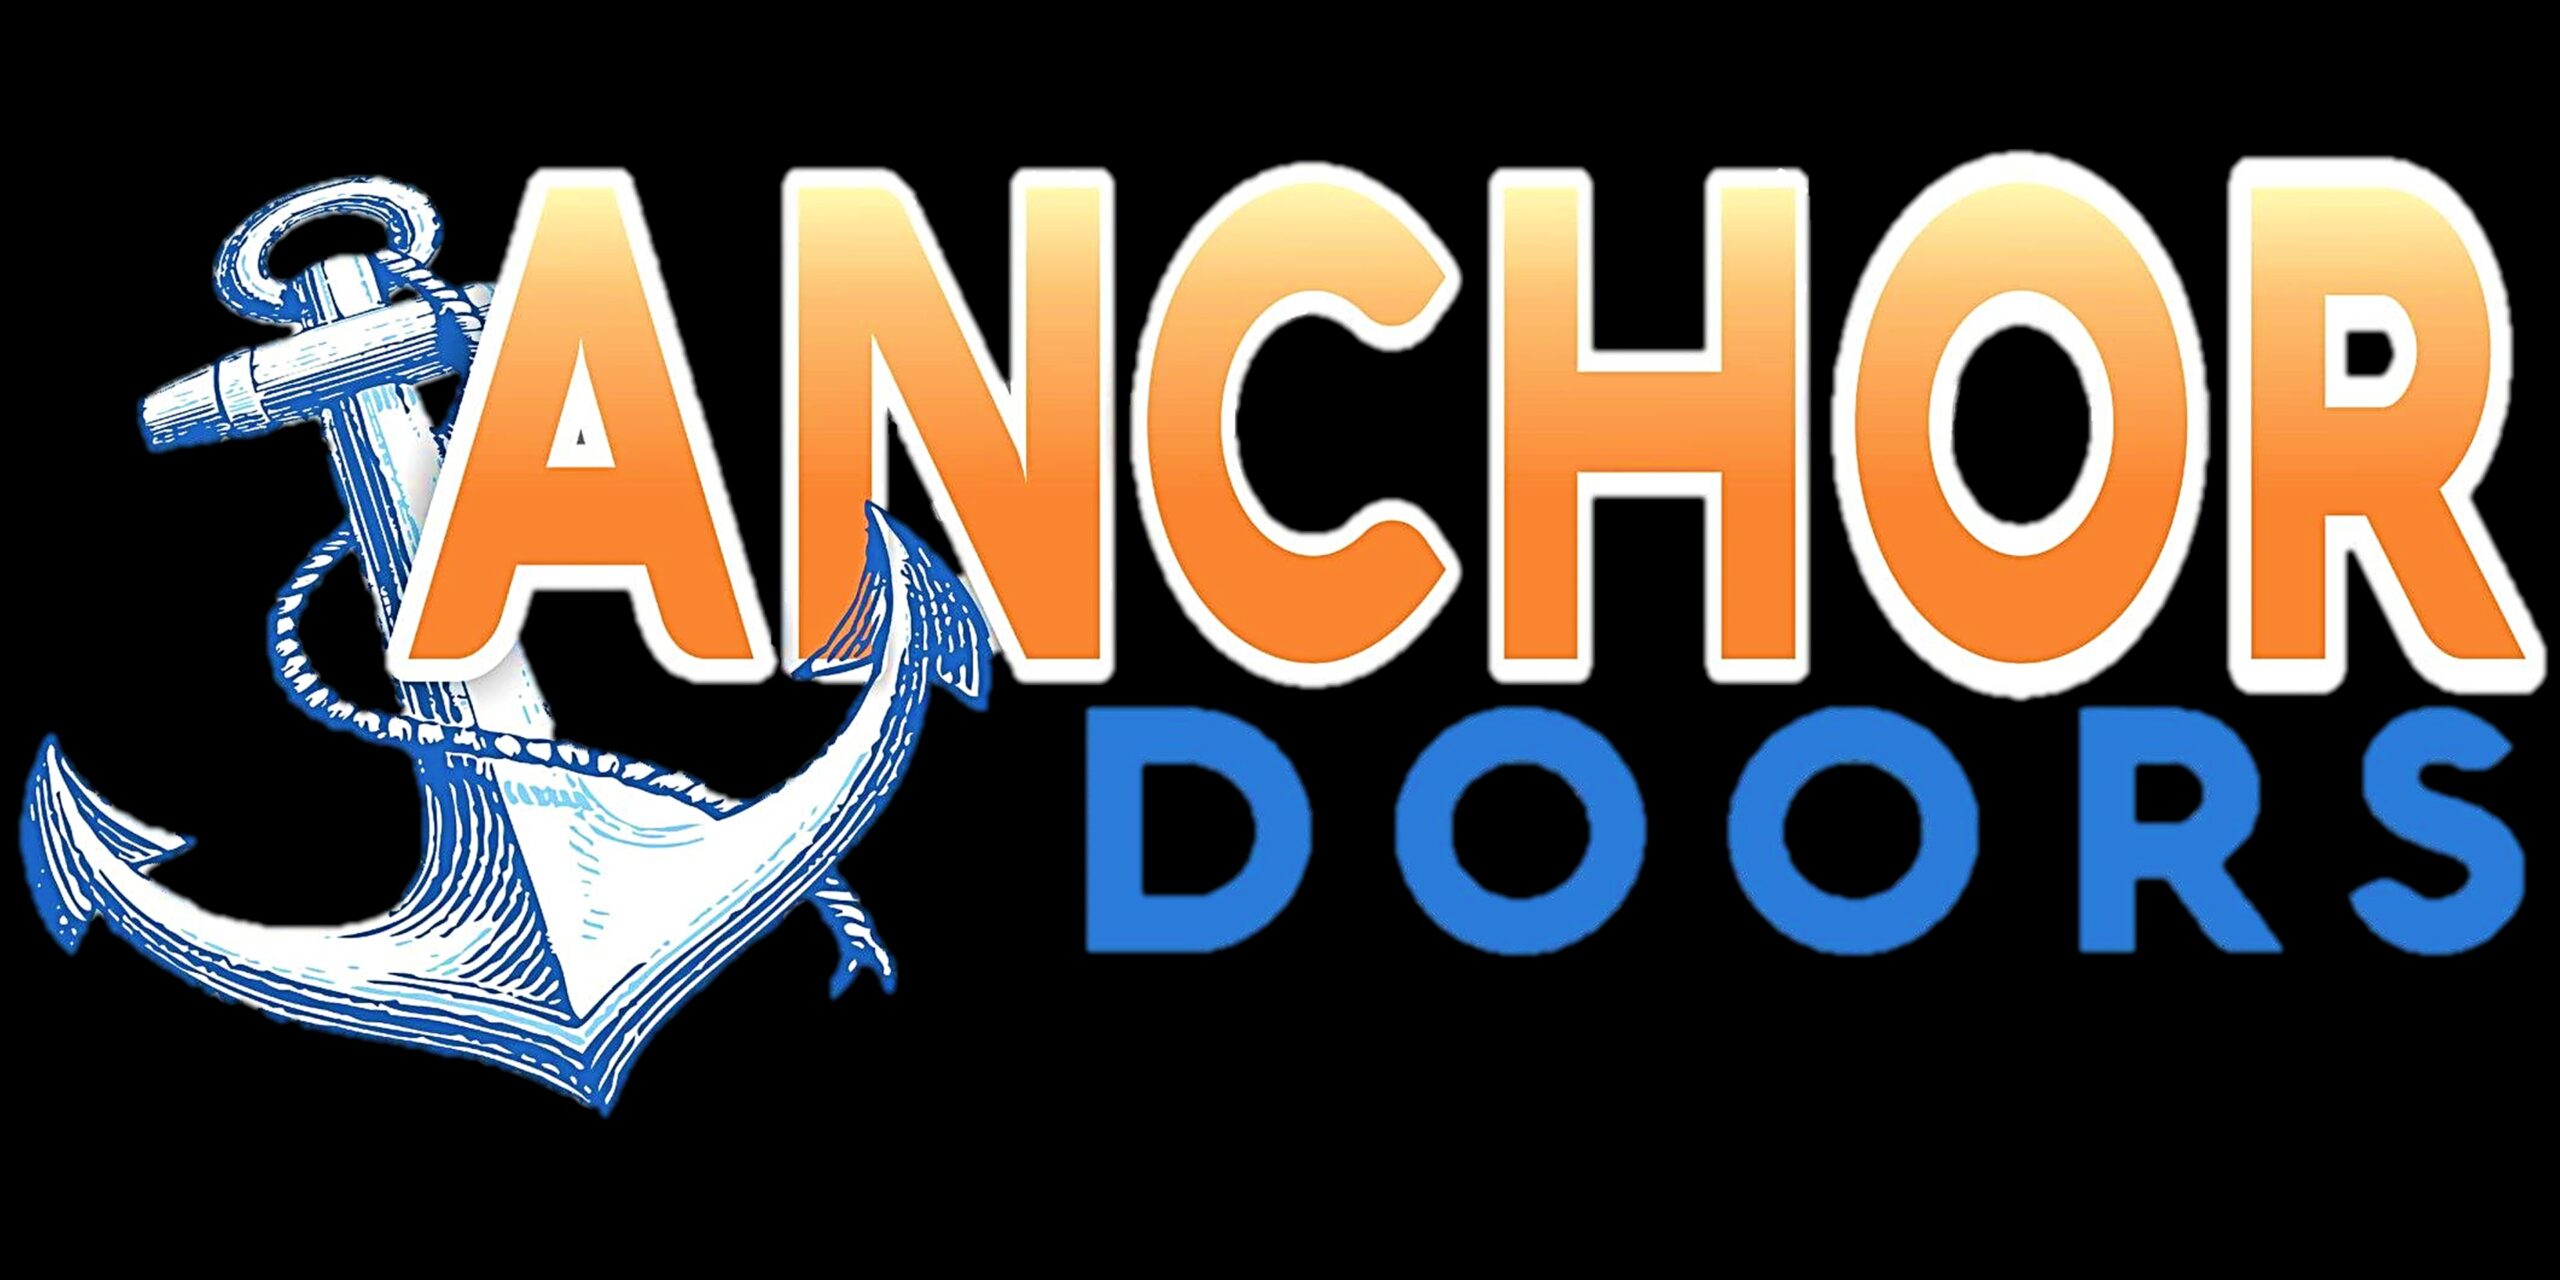 Anchor Doors